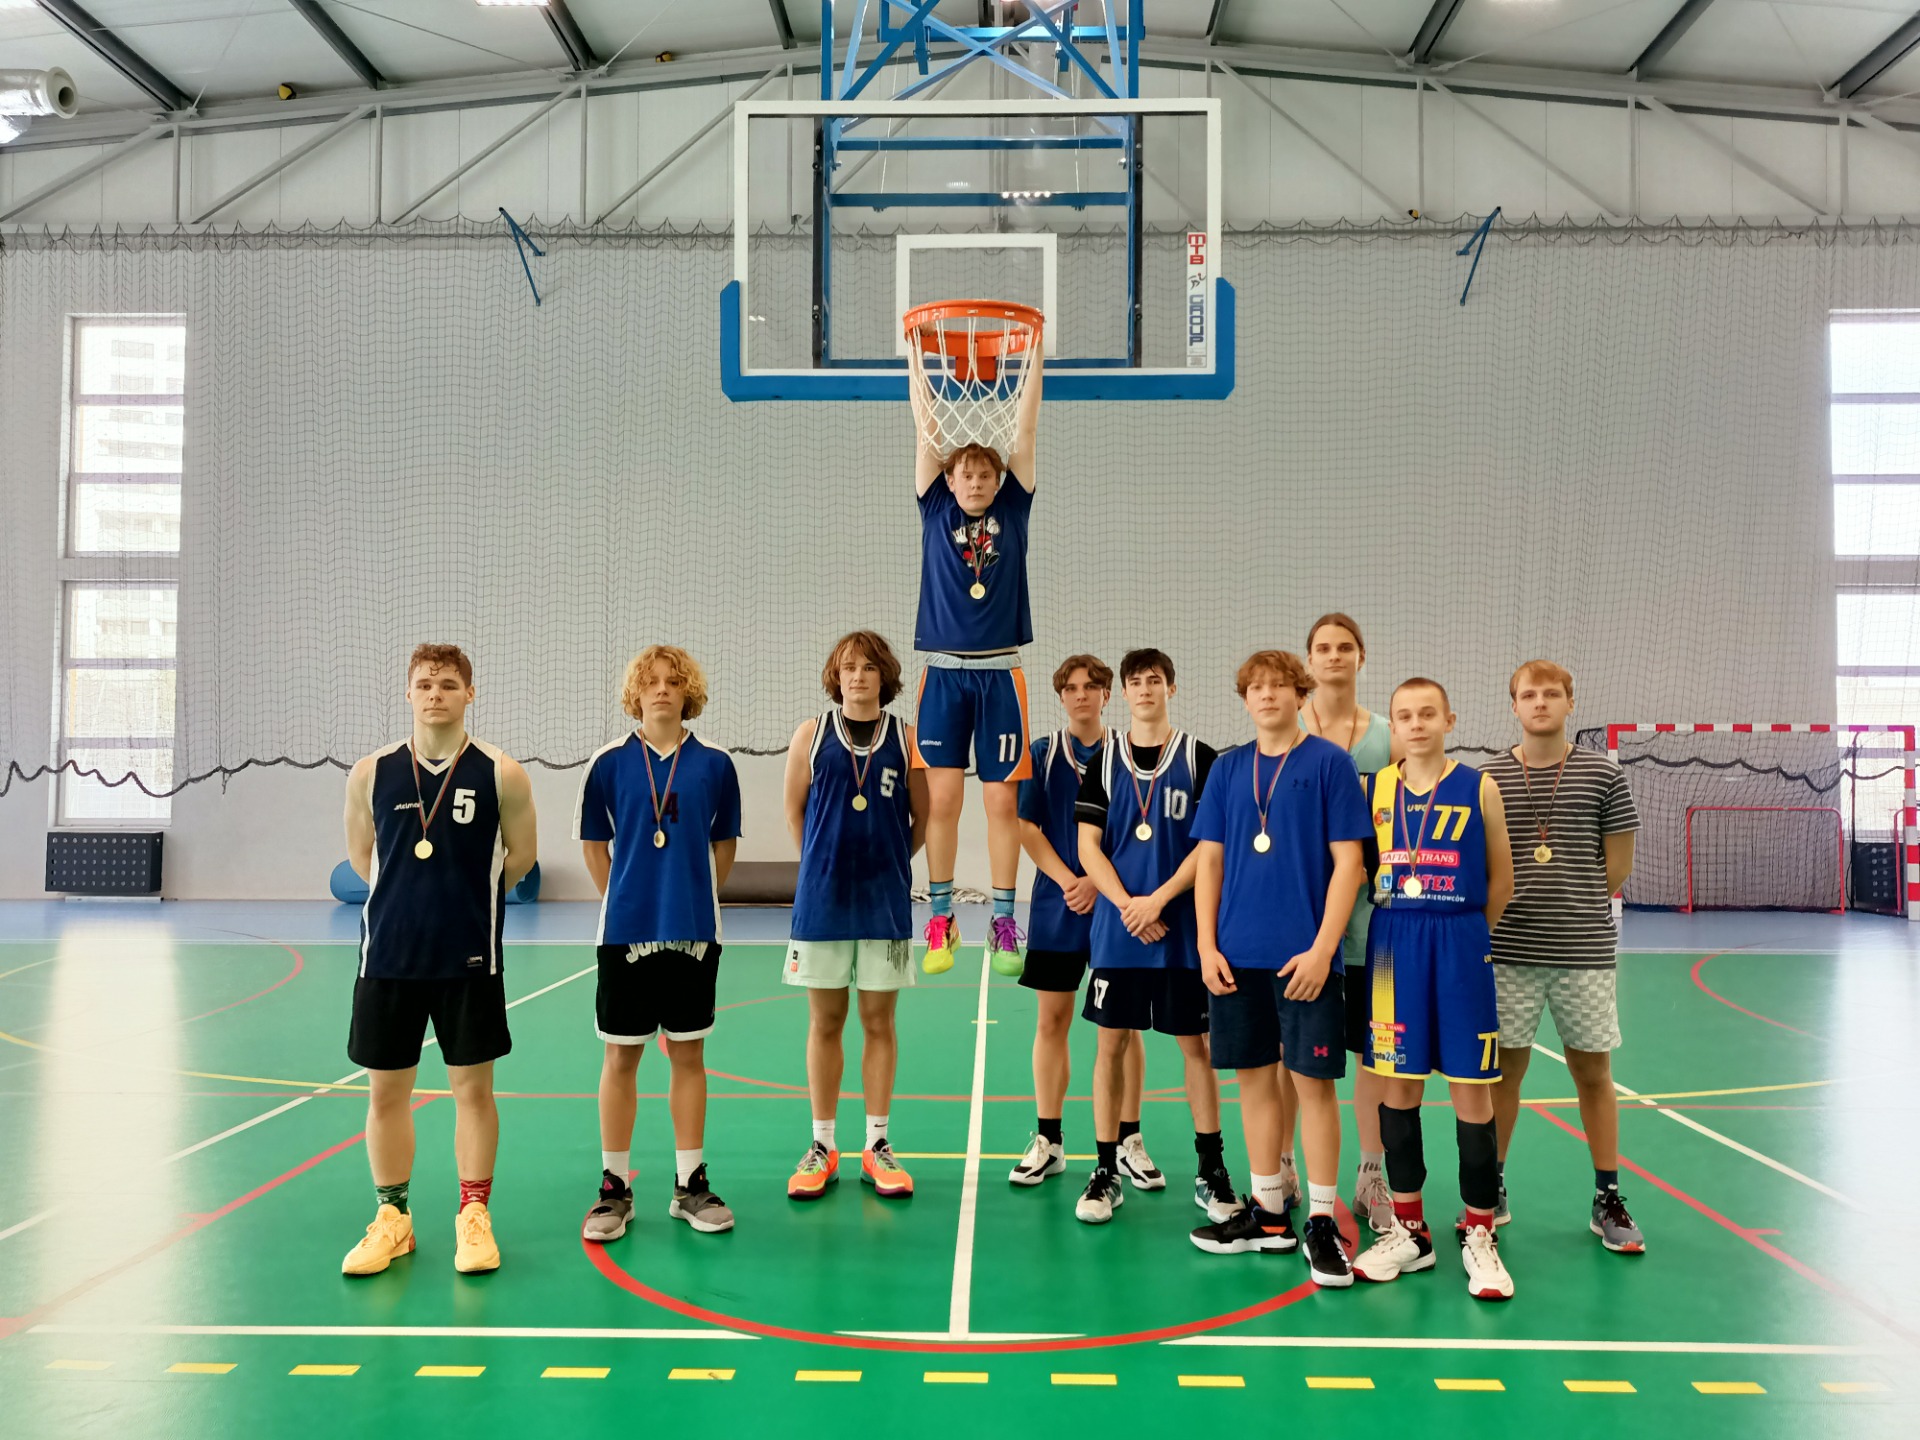 Zwycięska drużyna w niebieskich koszulkach z medalami  pozuje na sali gimnastycznej pod koszem do koszykówki. 